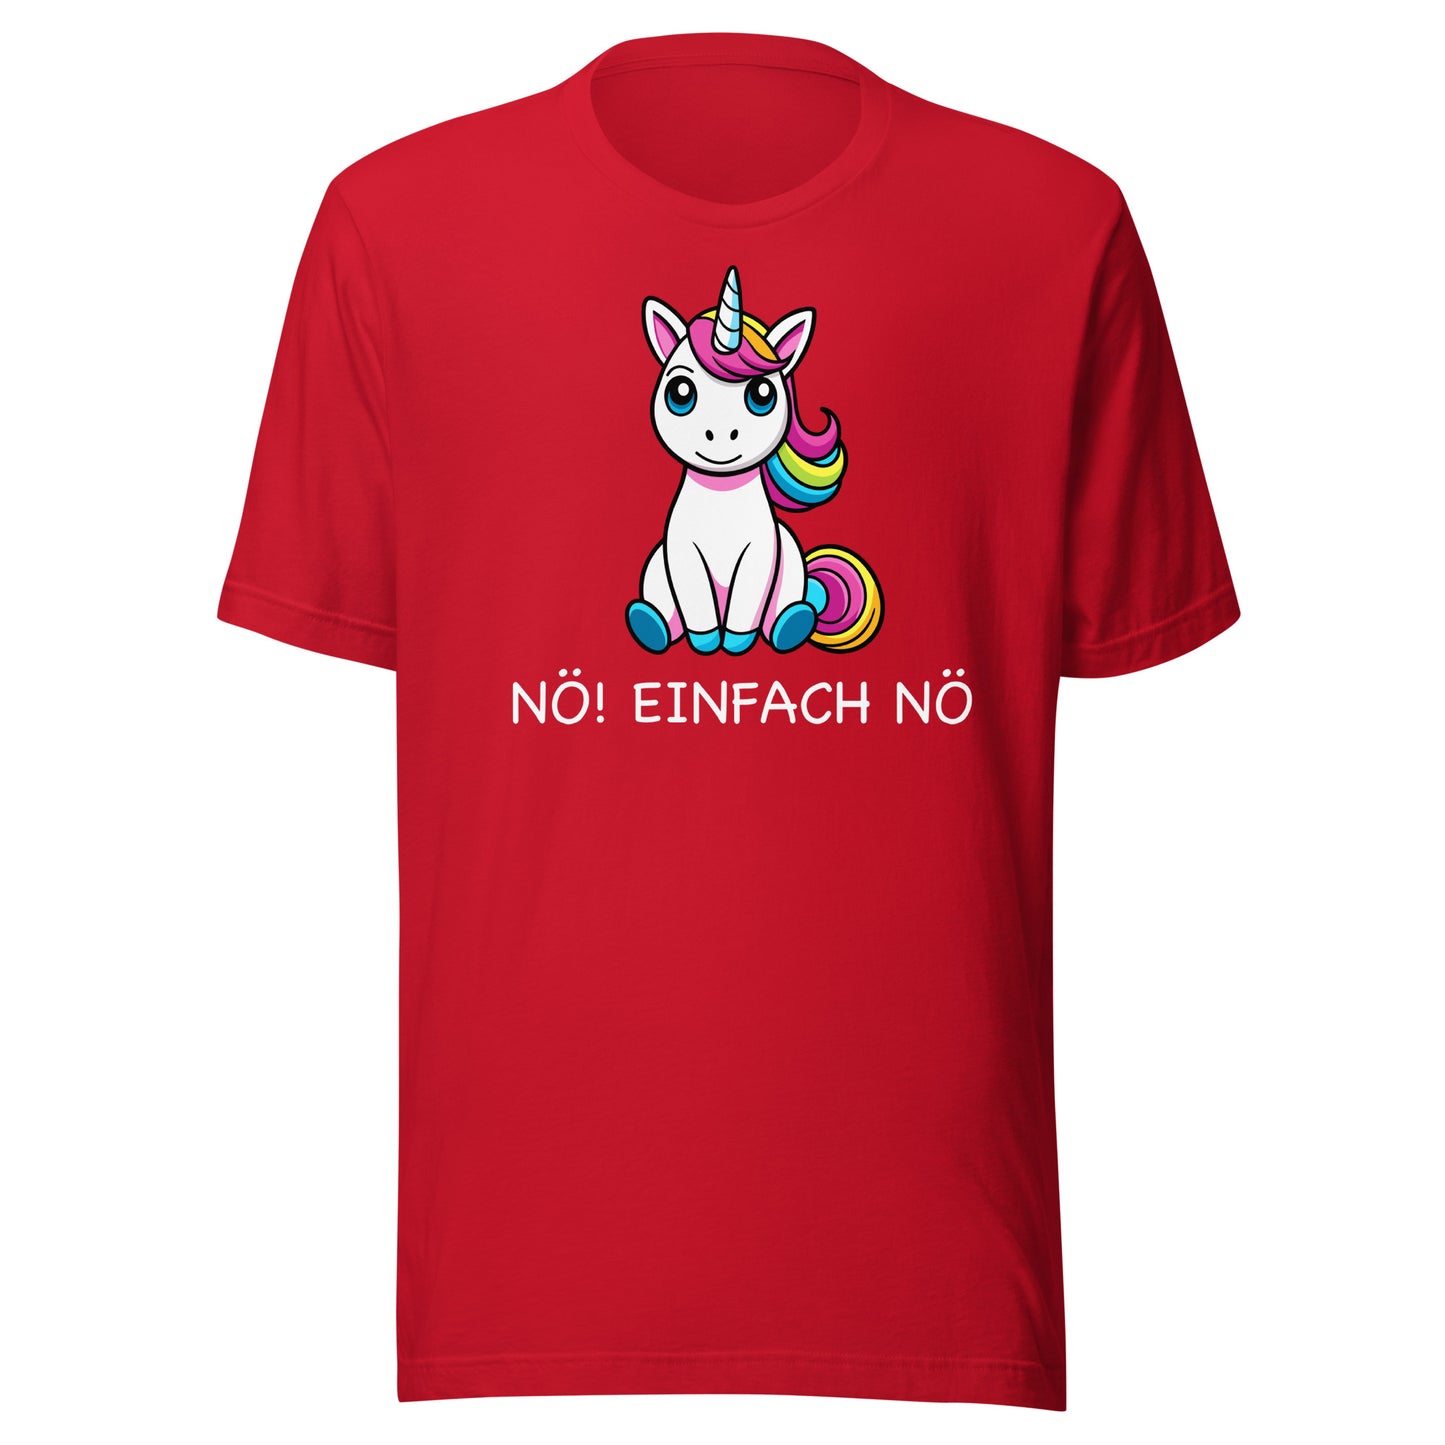 NO! JUST NO - printed T-shirt 